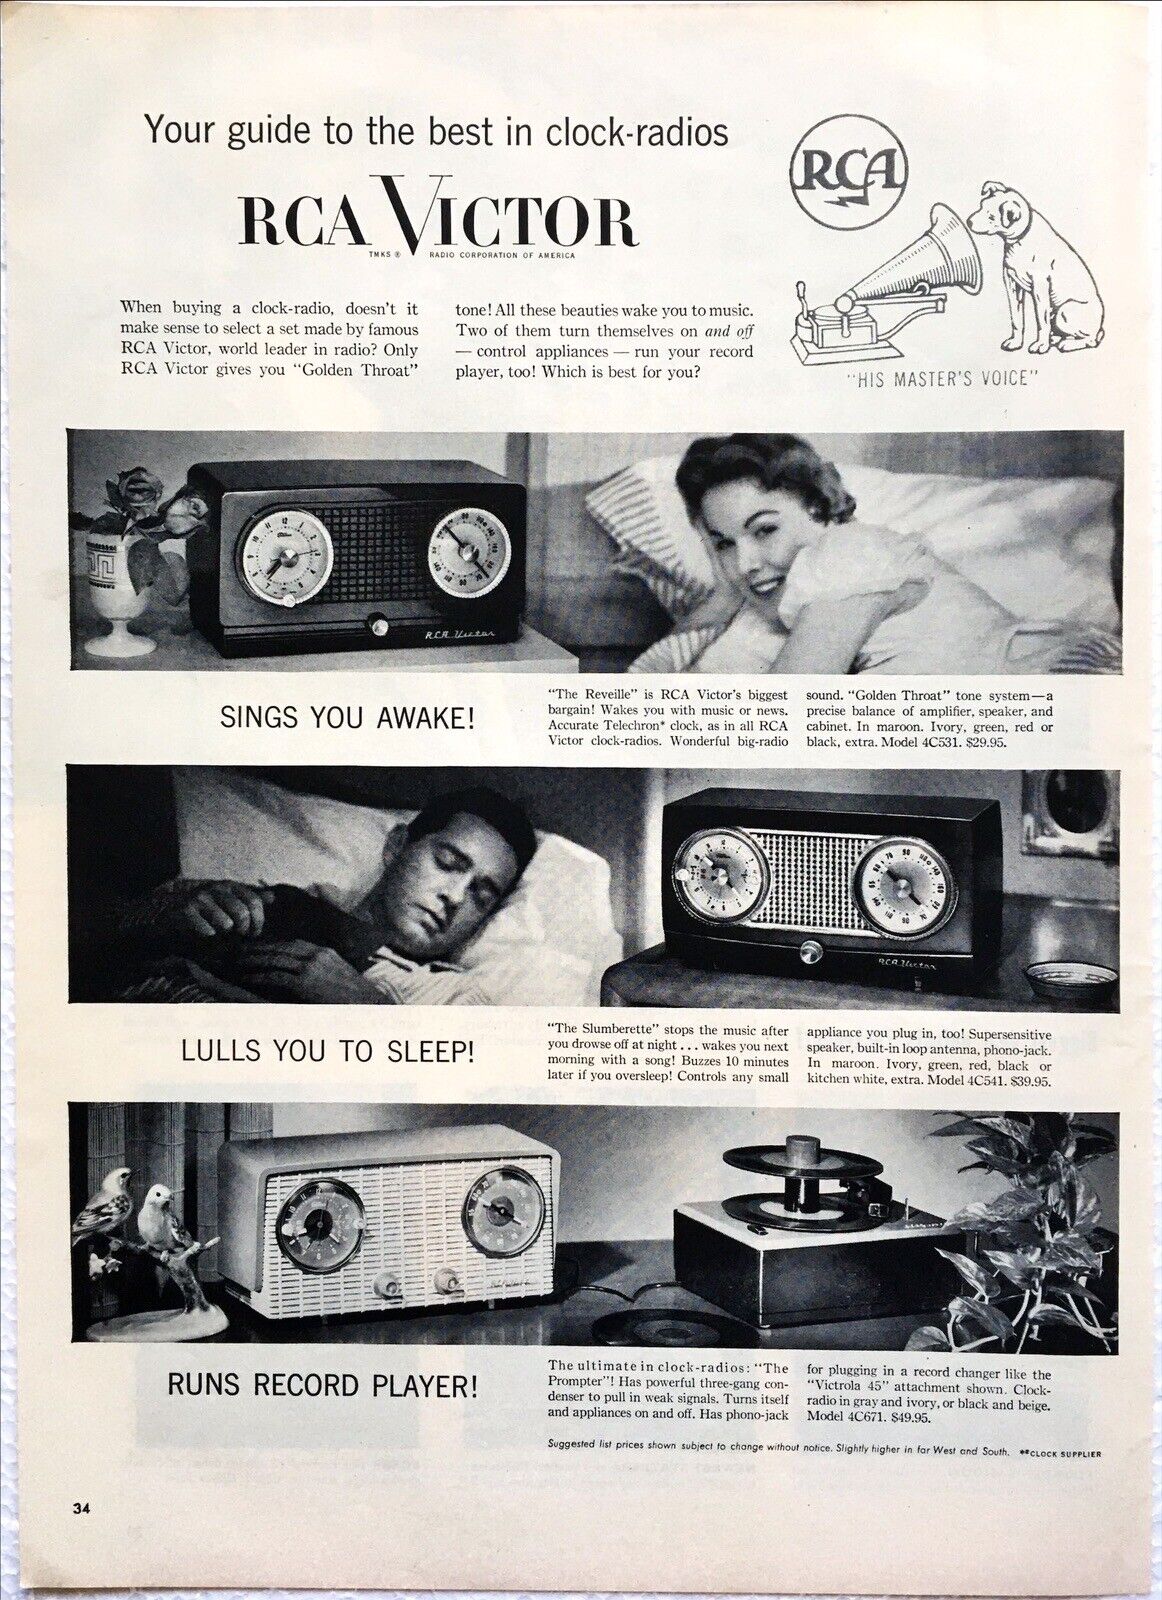 Vintage Print Ad RCA Victor Clock Radios Original 1956